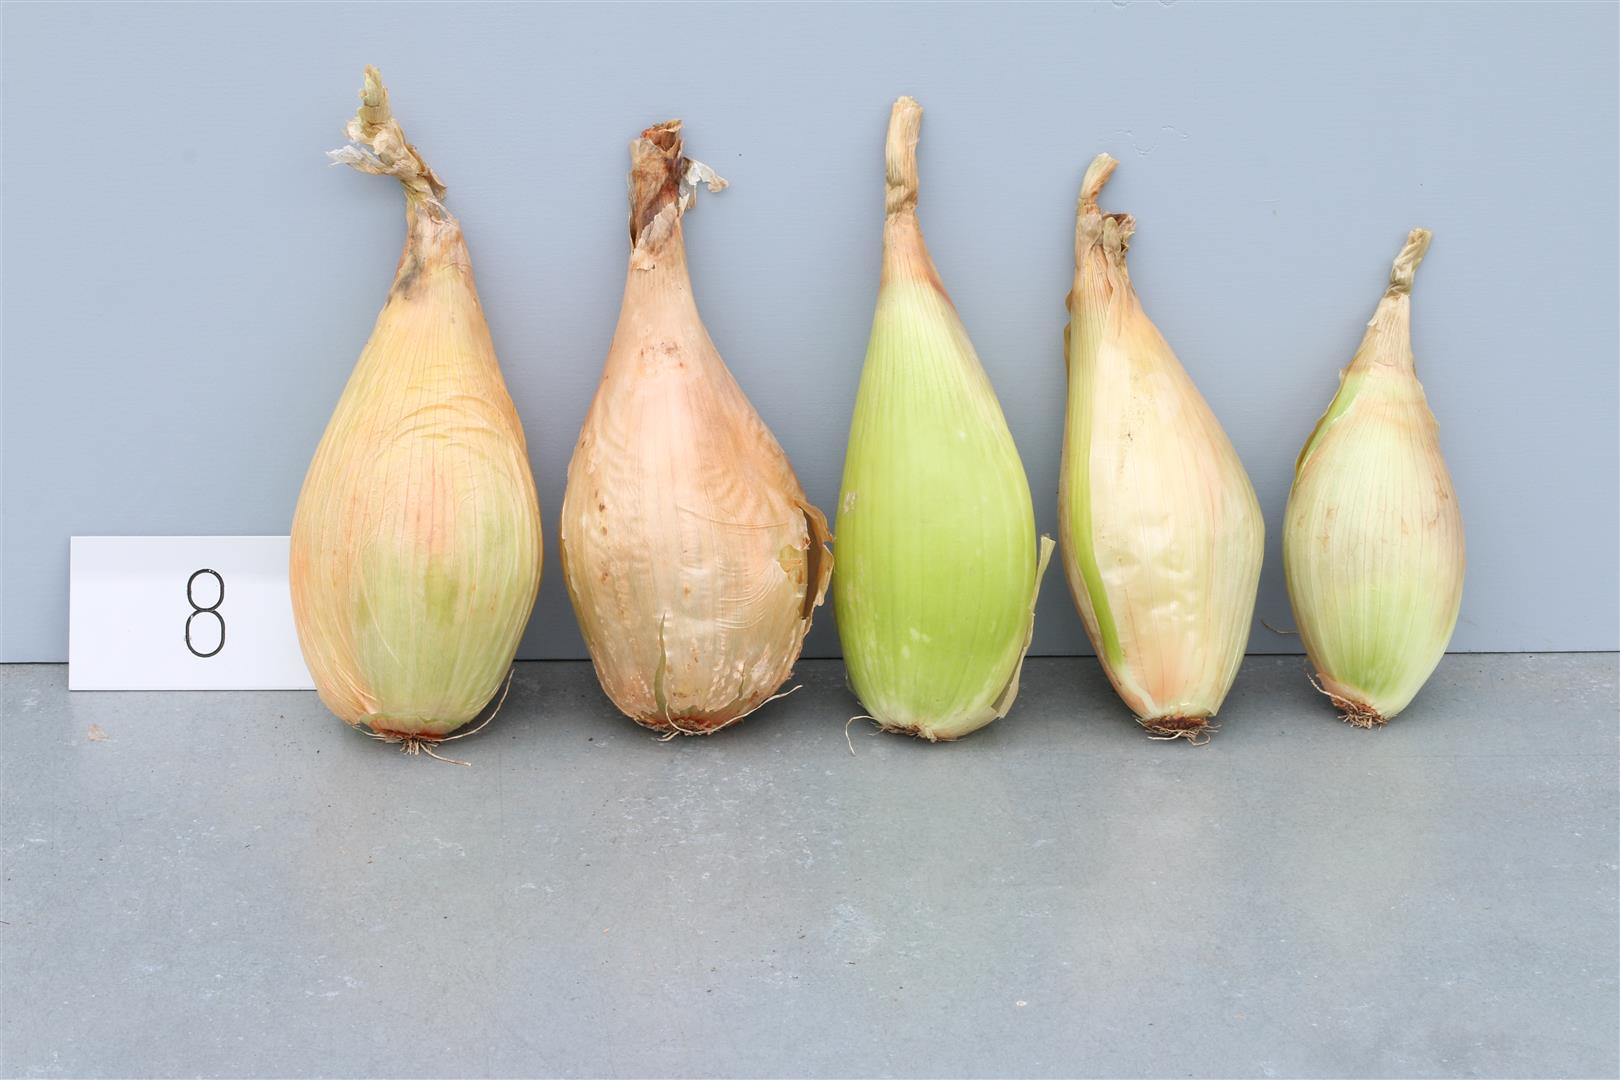 Onion 'Trébons'